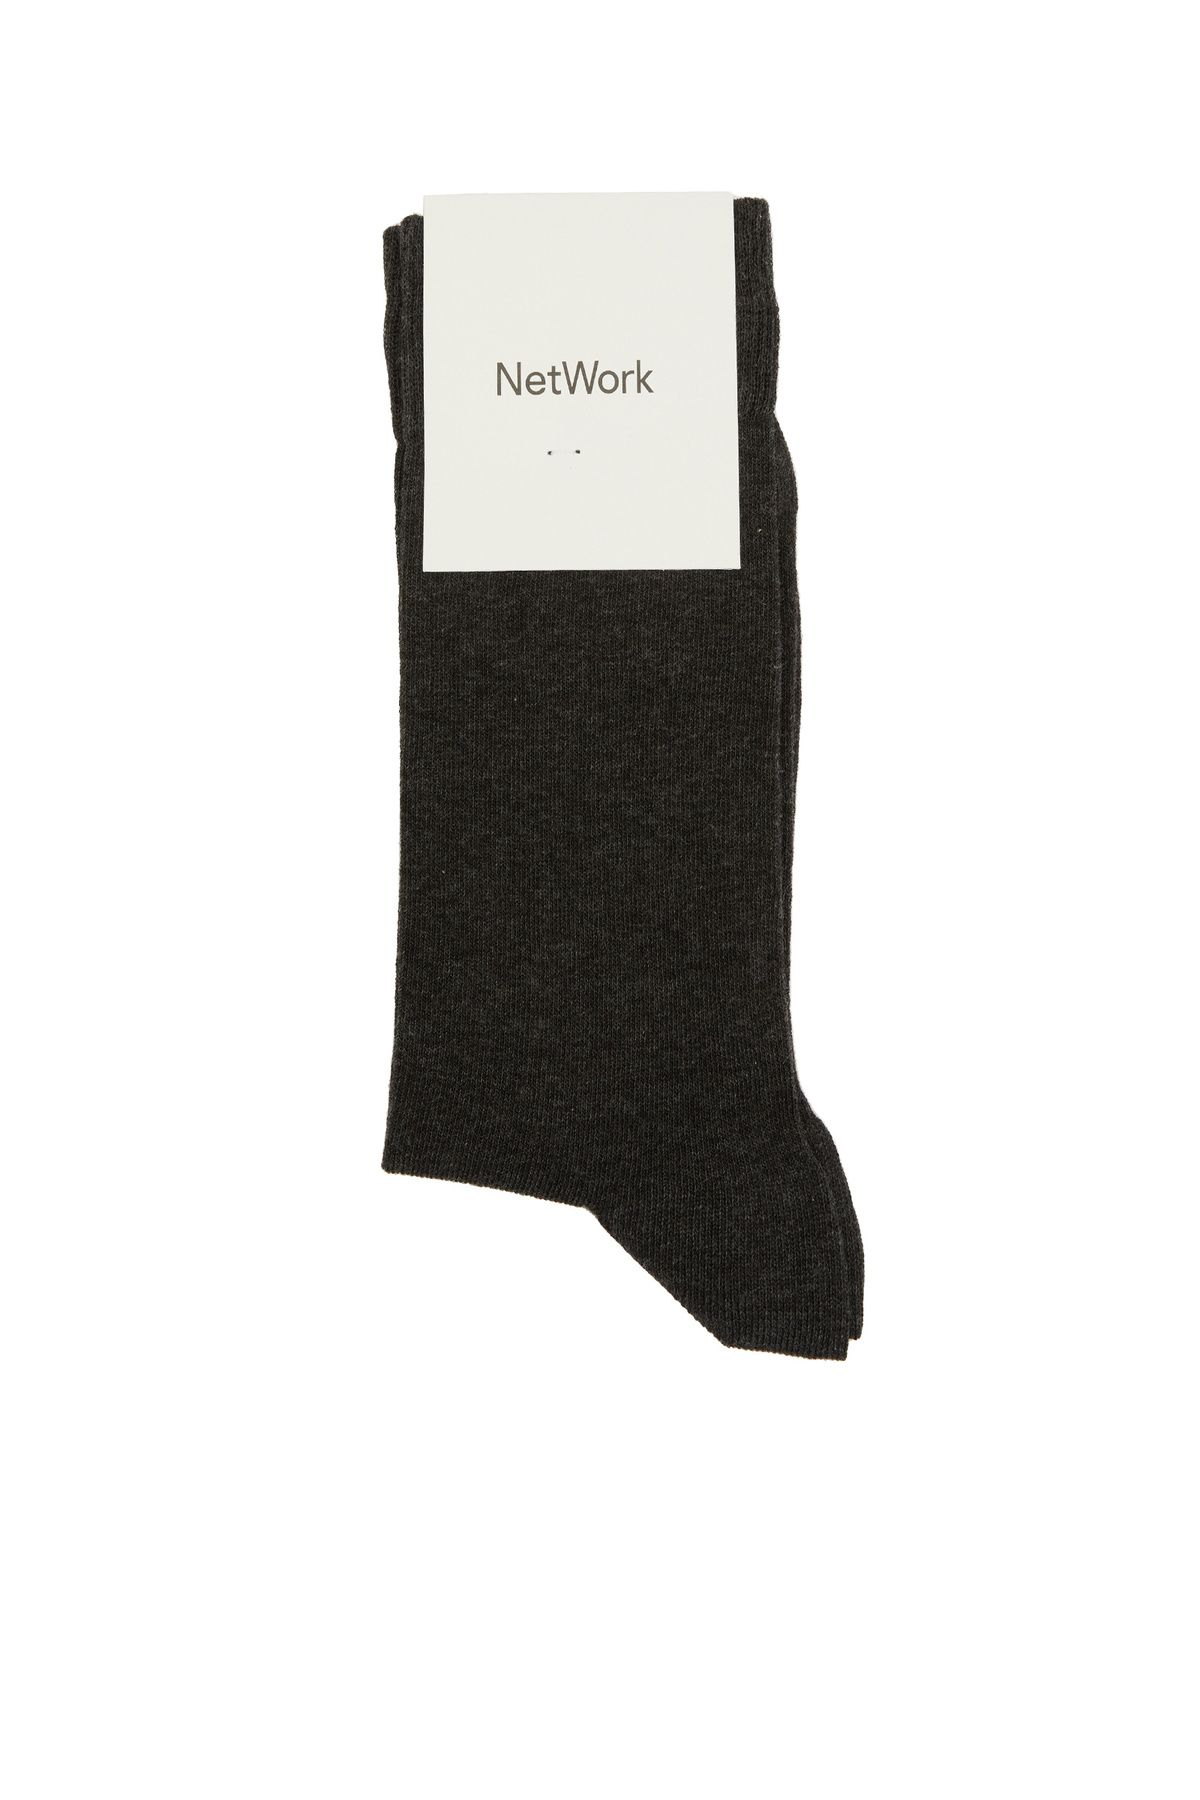 Network Antrasit Erkek Çorap